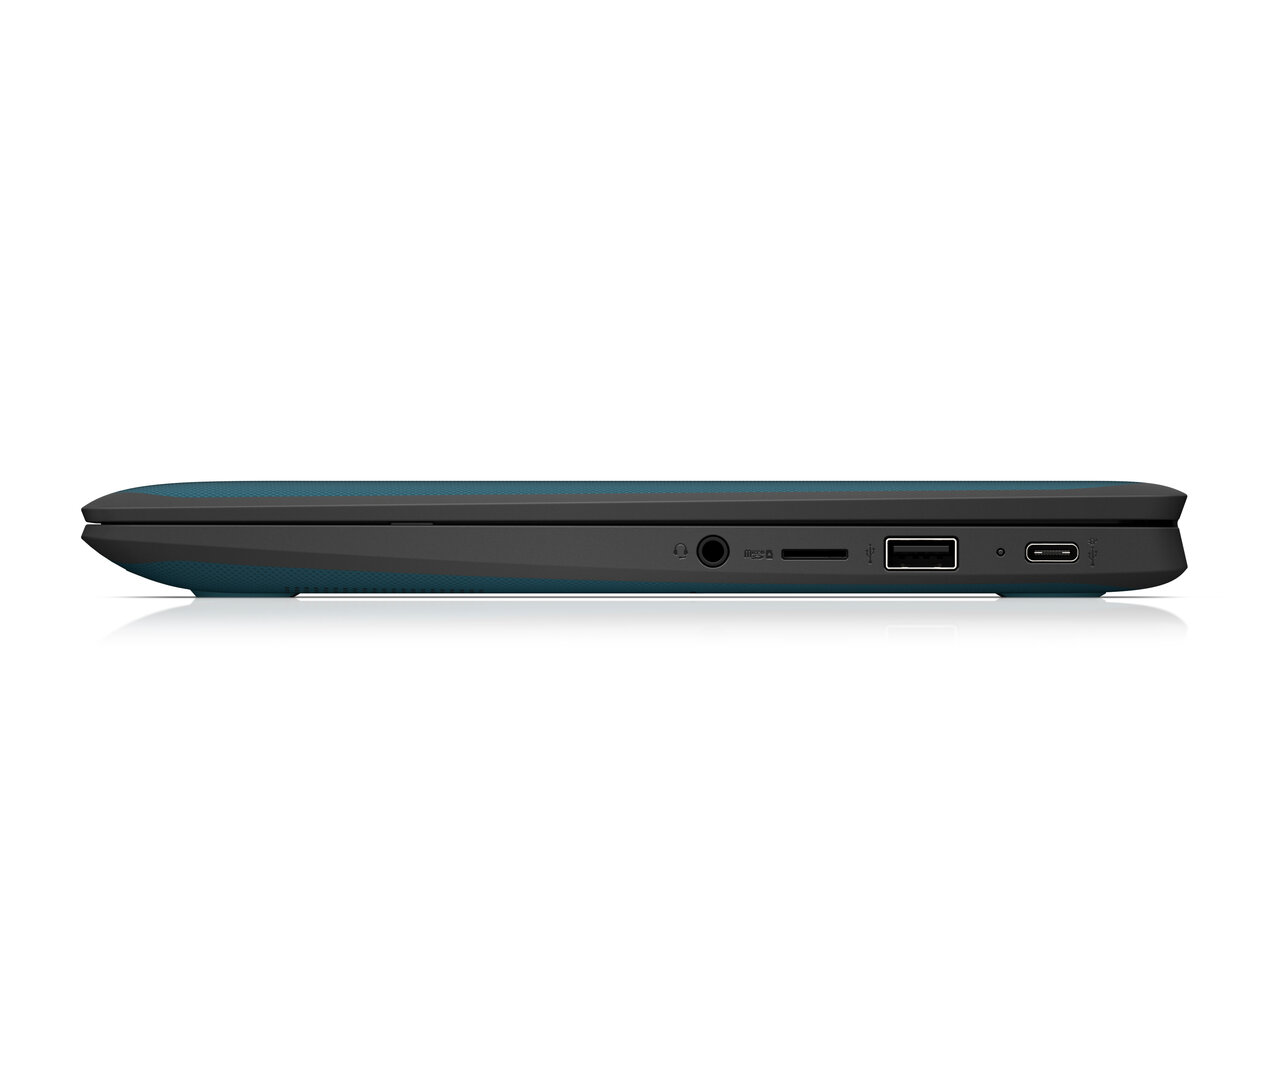 HP Chromebook x360 11MK G3 EE (Nautical Teal)